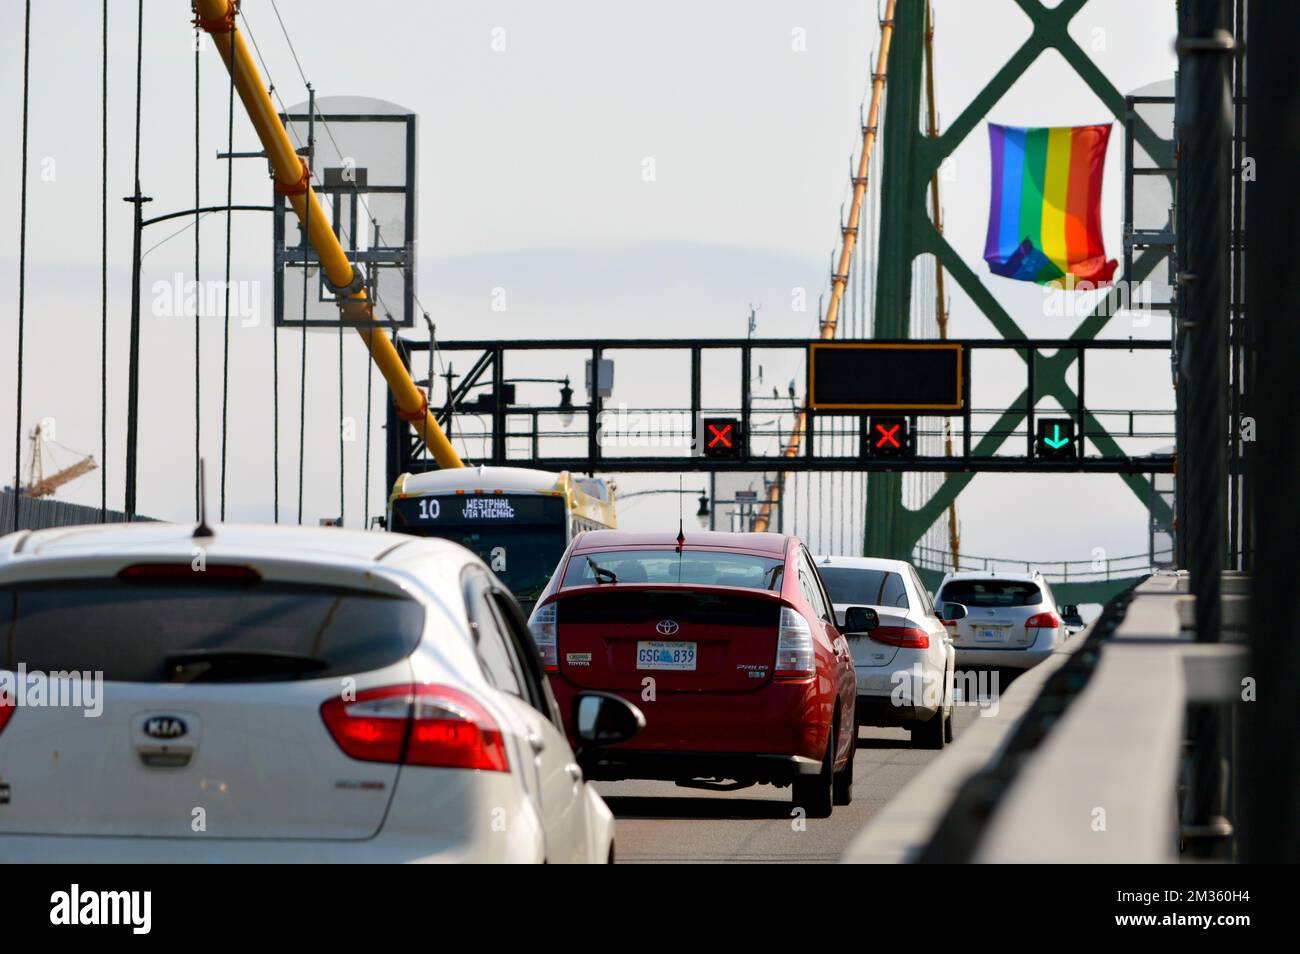 Auto sul ponte Angus L. Macdonald a Halifax, Nuova Scozia, Canada con la bandiera LGBT Pride appesa a una delle torri del ponte. Foto Stock